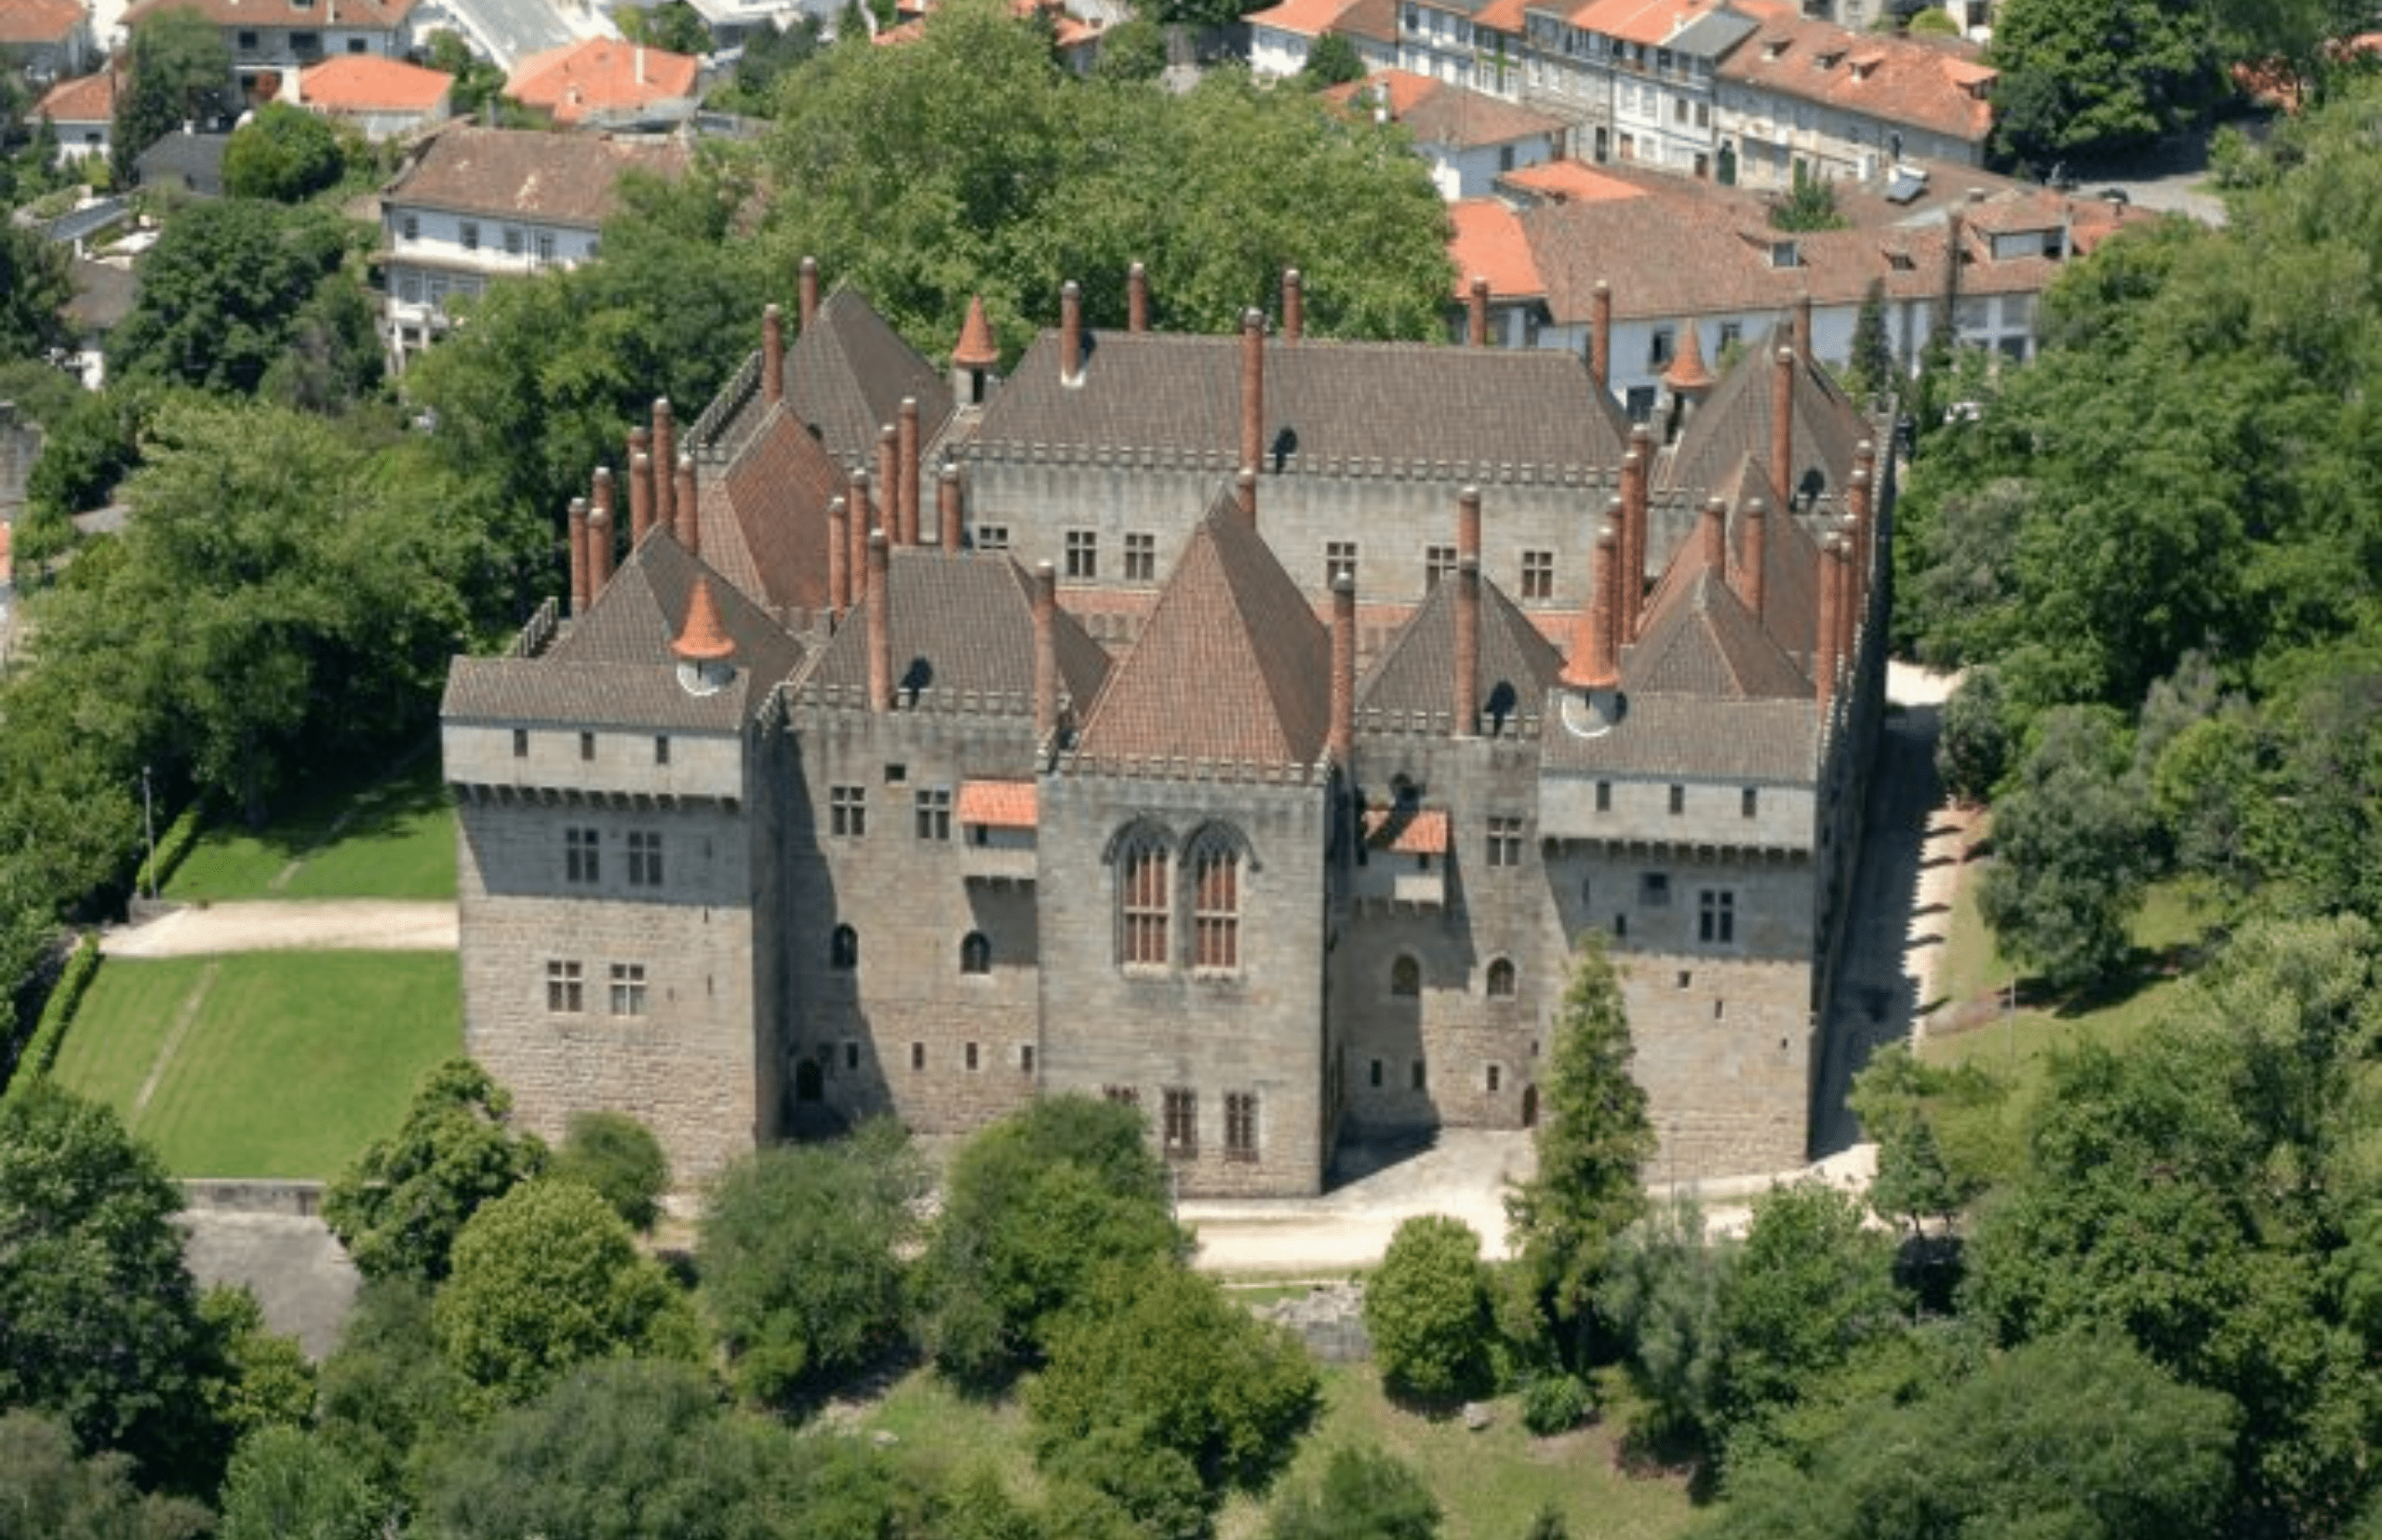 Palacio de los Duques de Braganza